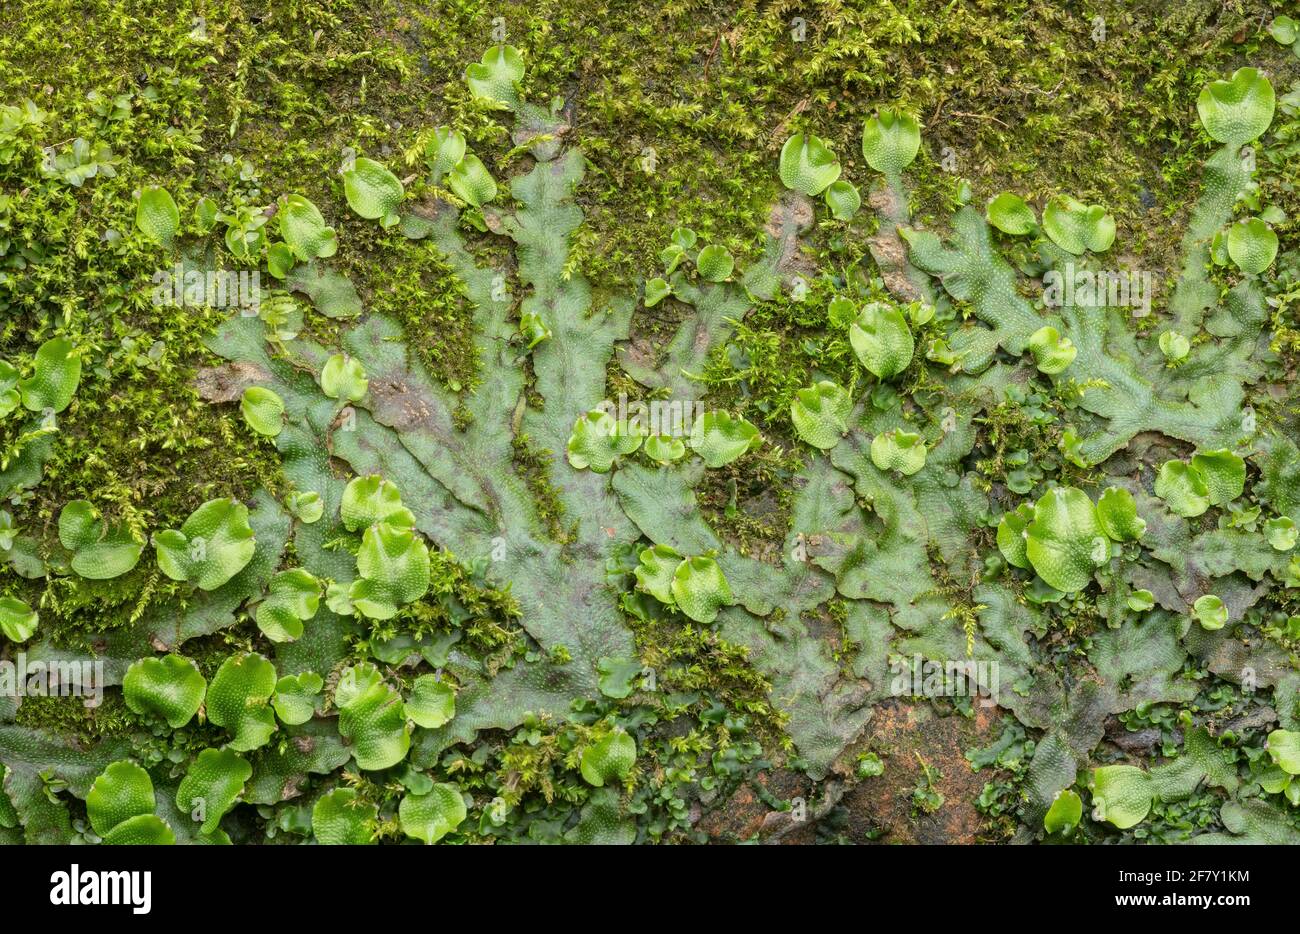 Grande livermoise parfumée, Conocephalum conicum, qui pousse fortement au printemps sur les rochers au bord de la rivière. Dorset. Banque D'Images